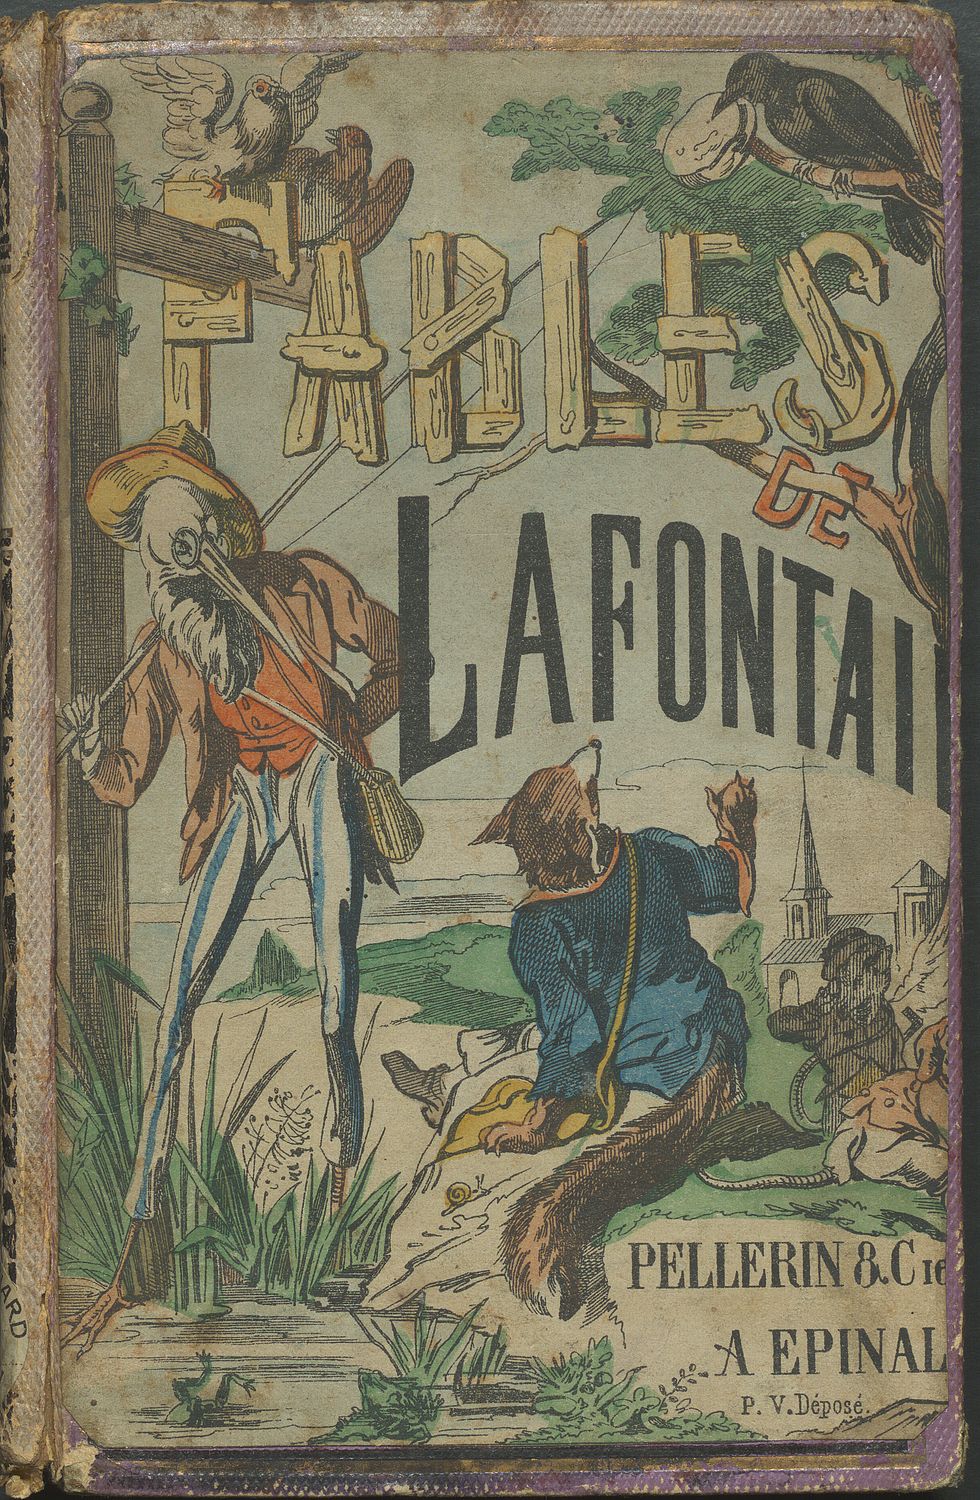 Edition 1883